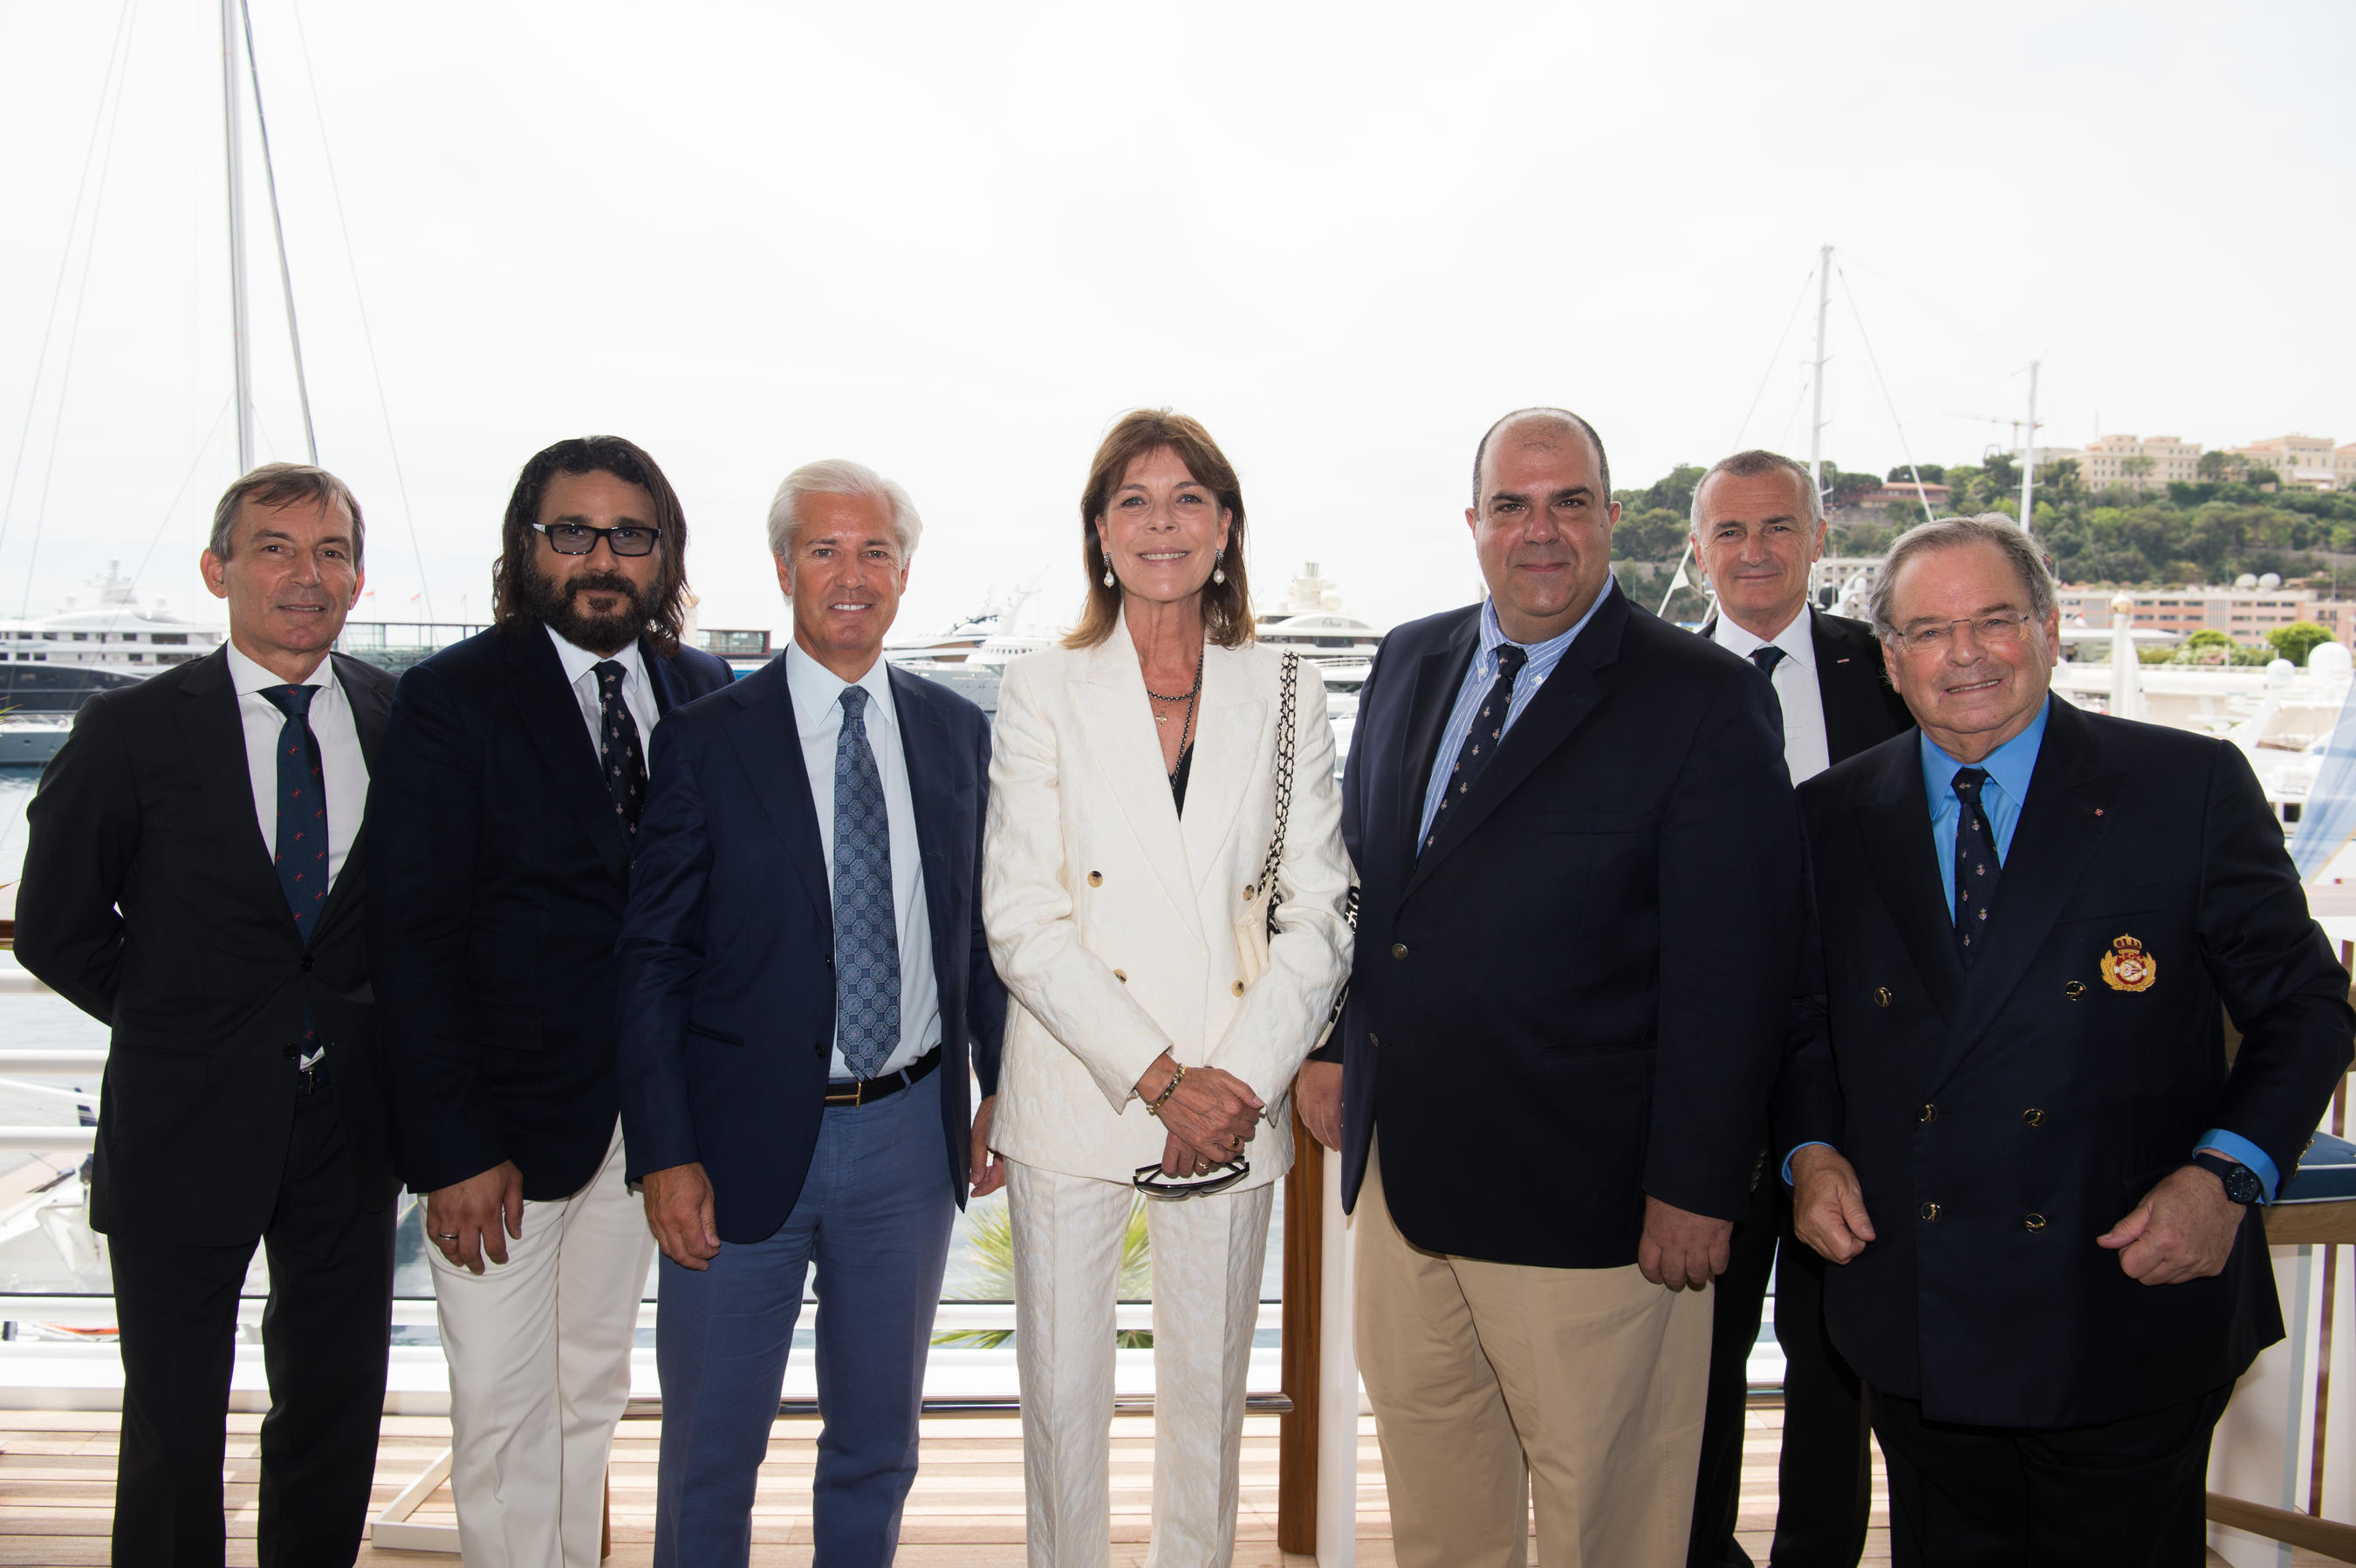 Déjeuner privé au Yacht Club de Monaco en l’honneur des donateurs pour l’Association « Fondation des Amis du CHPG »